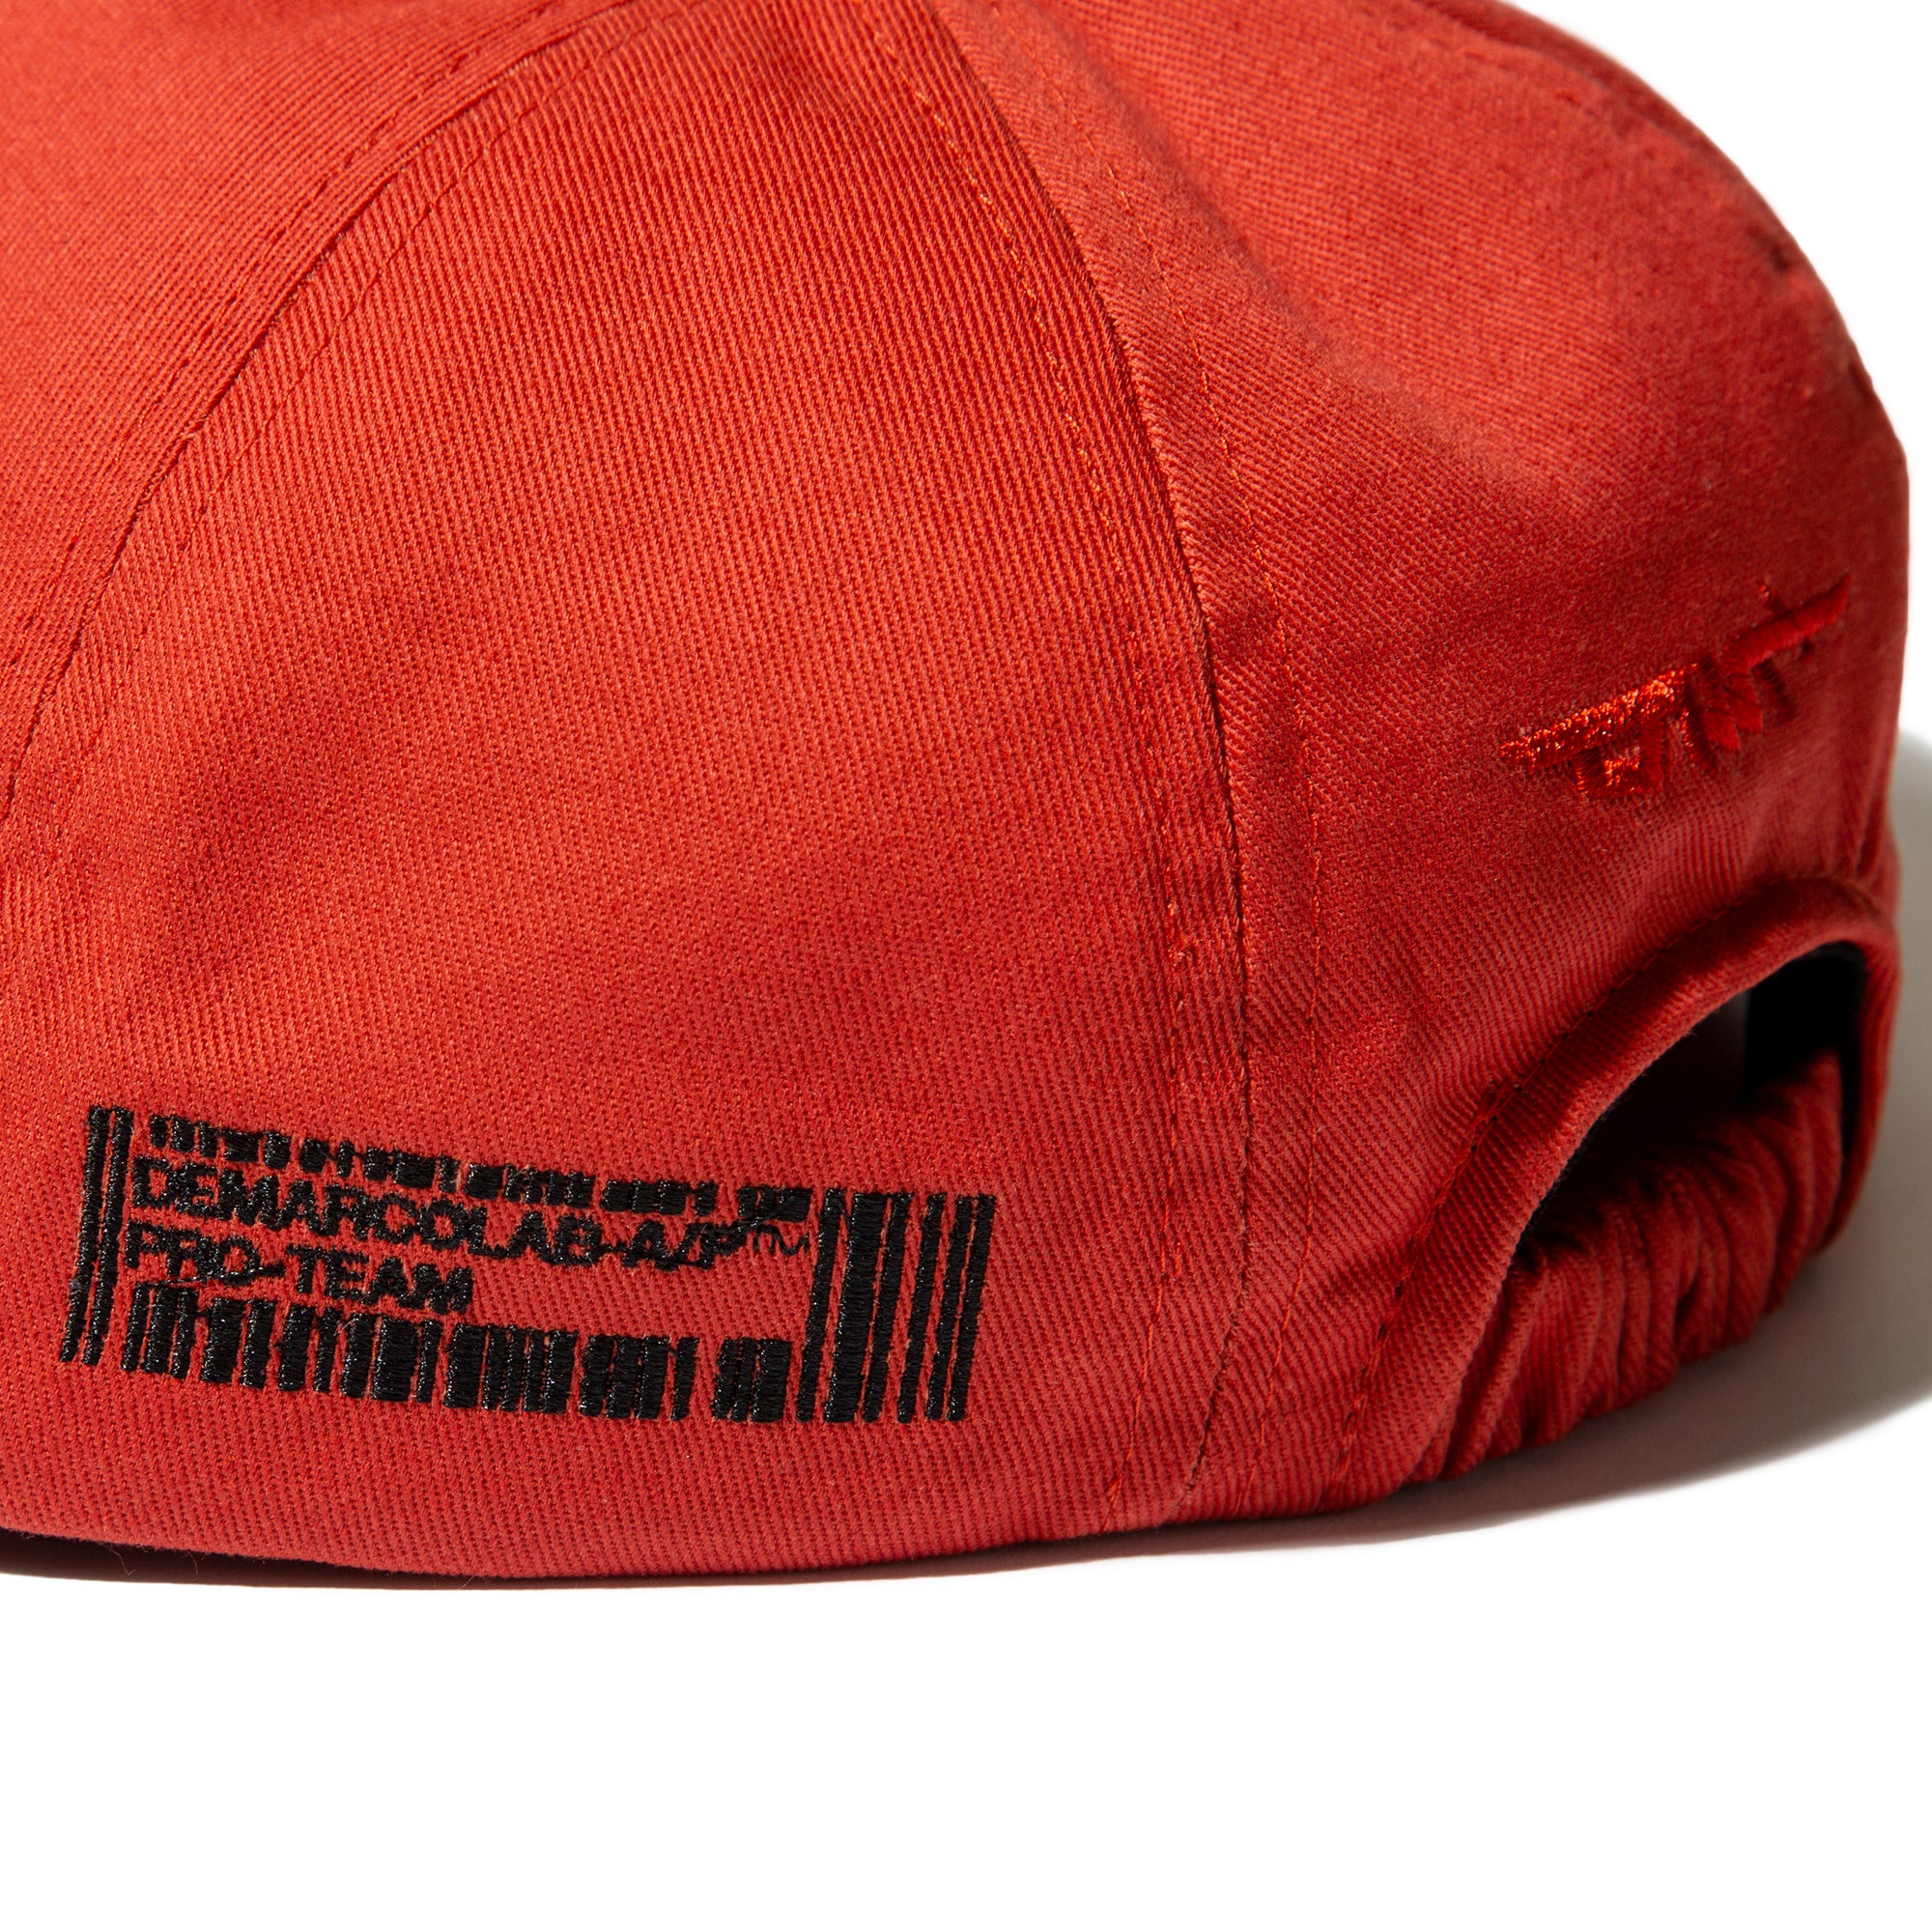 DML-A/P 6 PANEL CAP (Red)